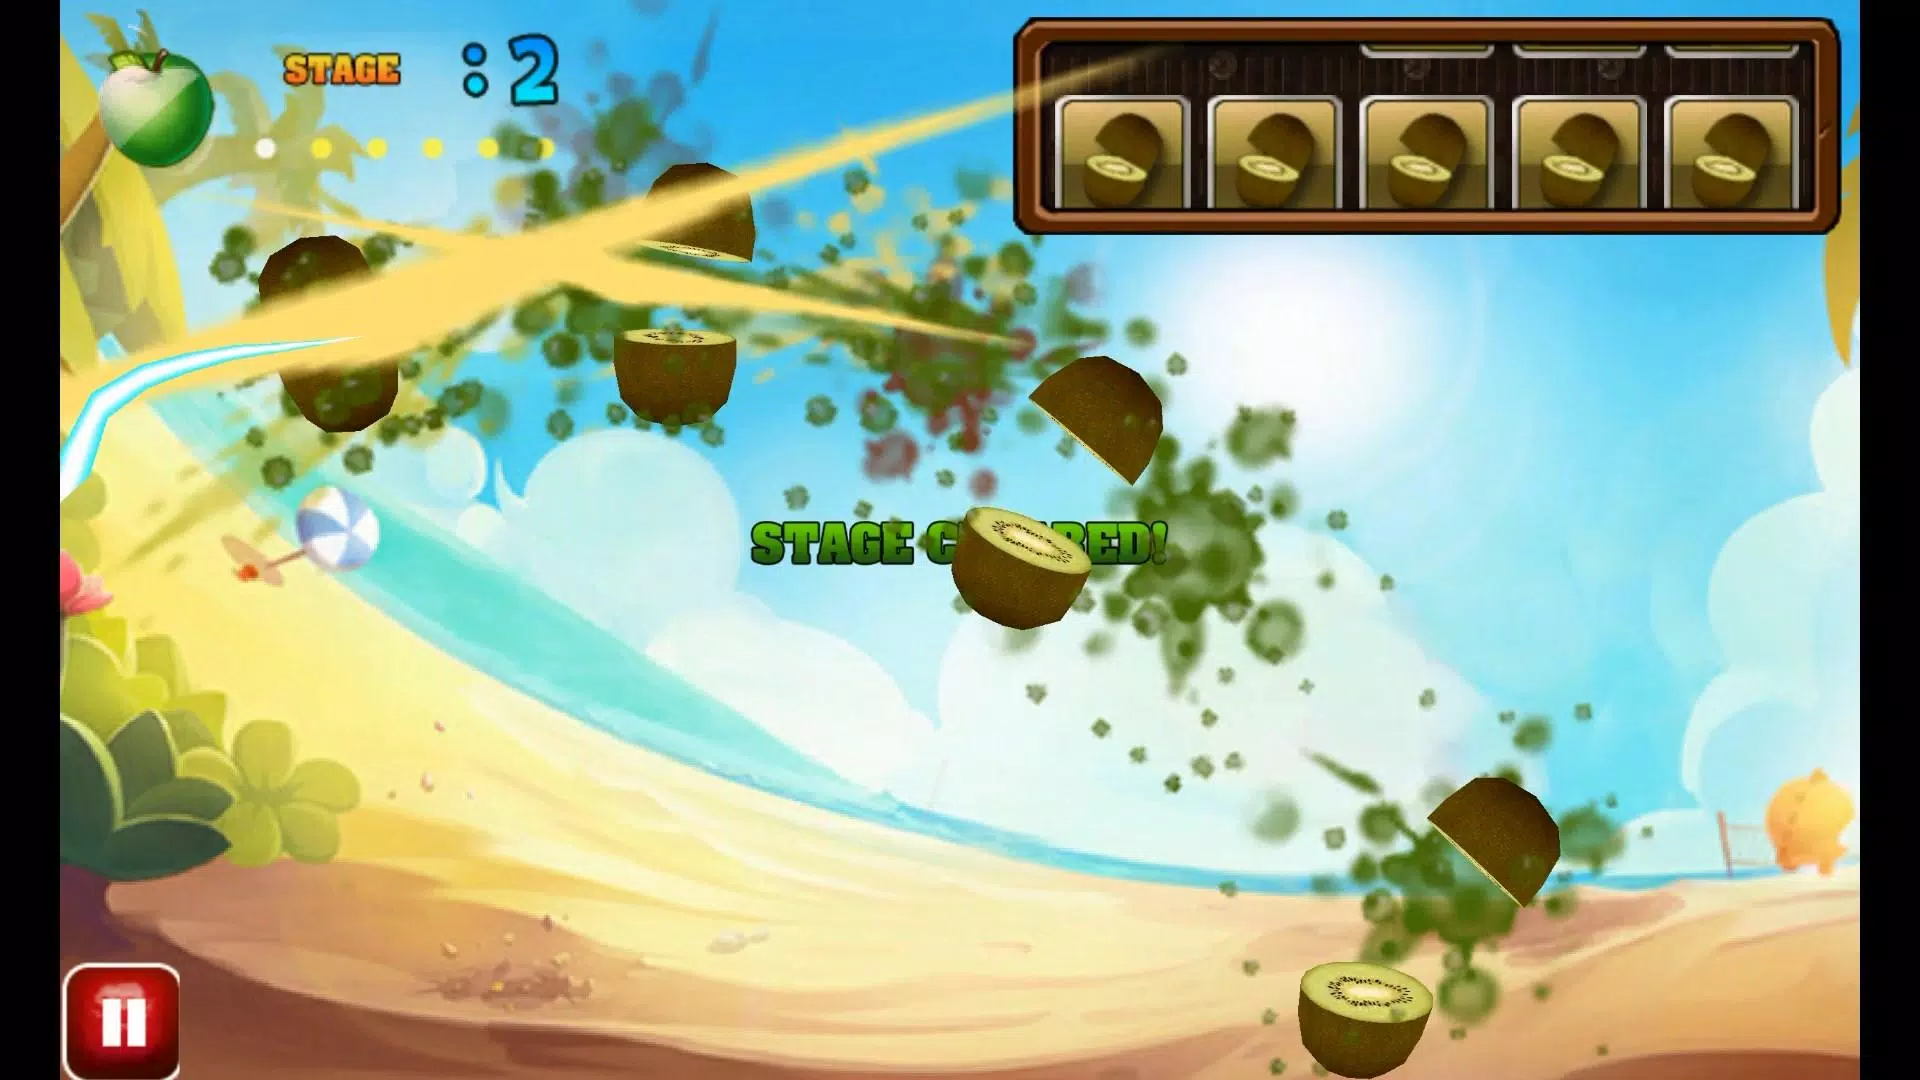 Imagens do jogo aTilt 3D Labyrinth Free 3.4.2 Fruit Ninja Free O